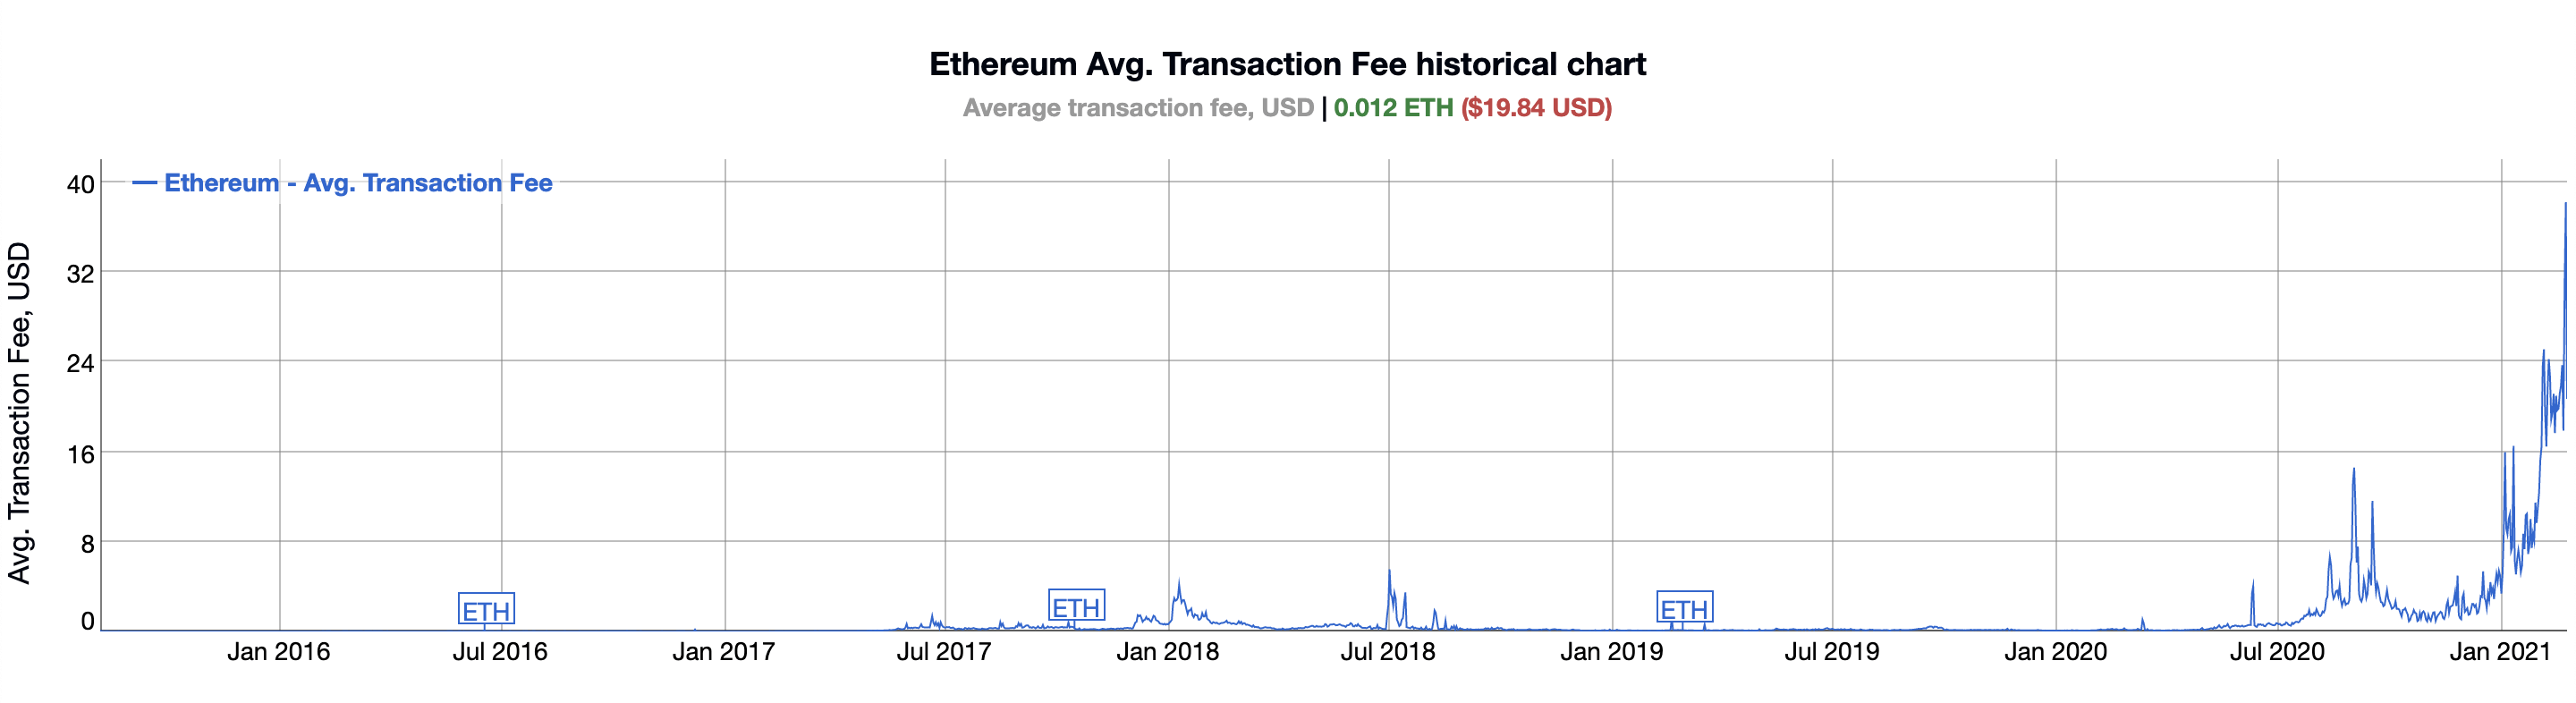 Average Ethereum Transaction Fee